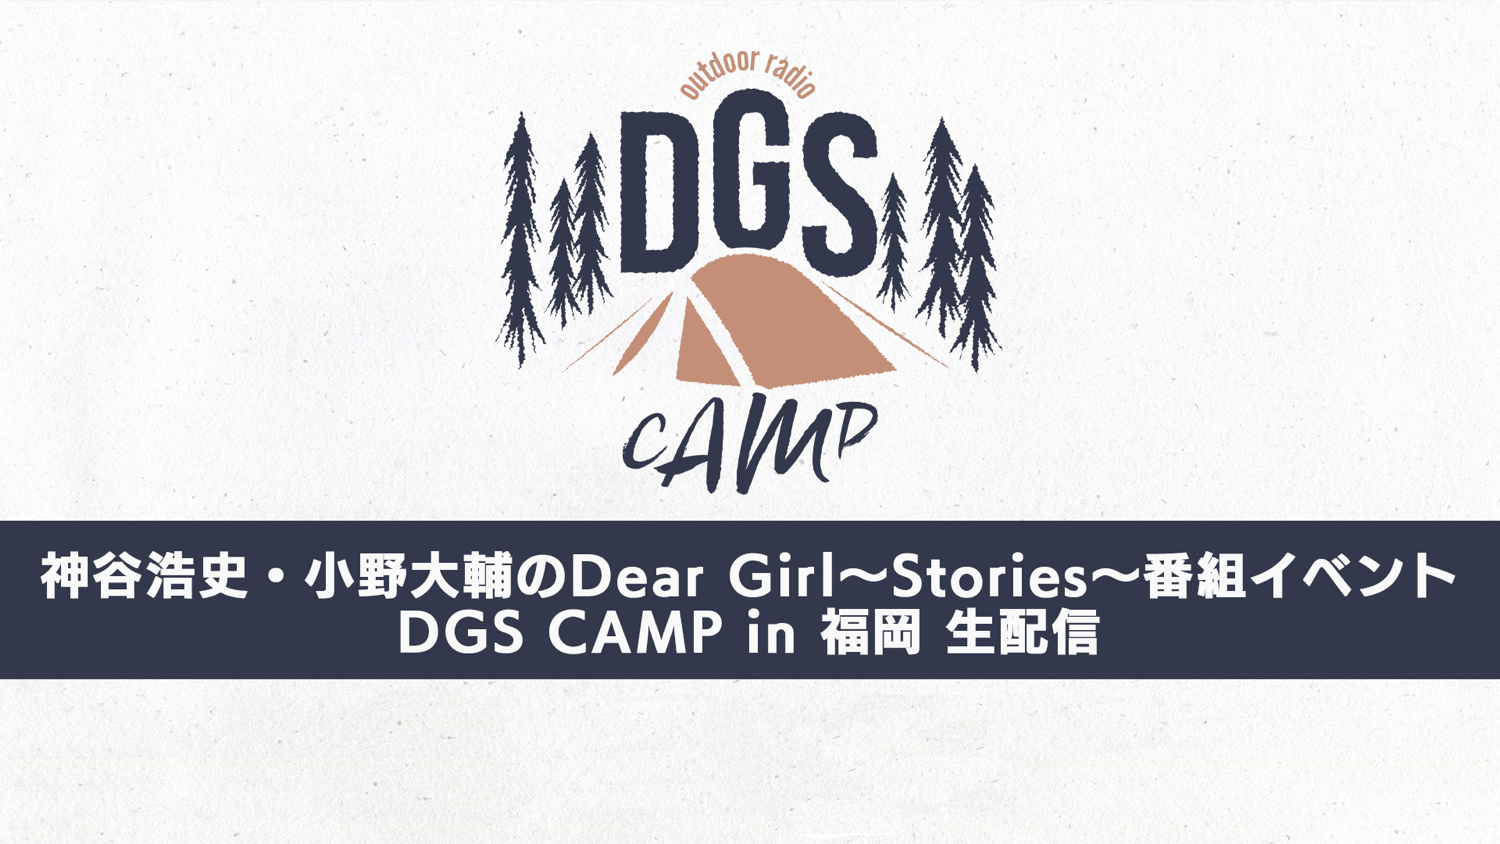 DGS CAMP in 福岡 有料配信視聴チケットは本日3/15(火)23:59まで販売中！ニコニコ生放送にて